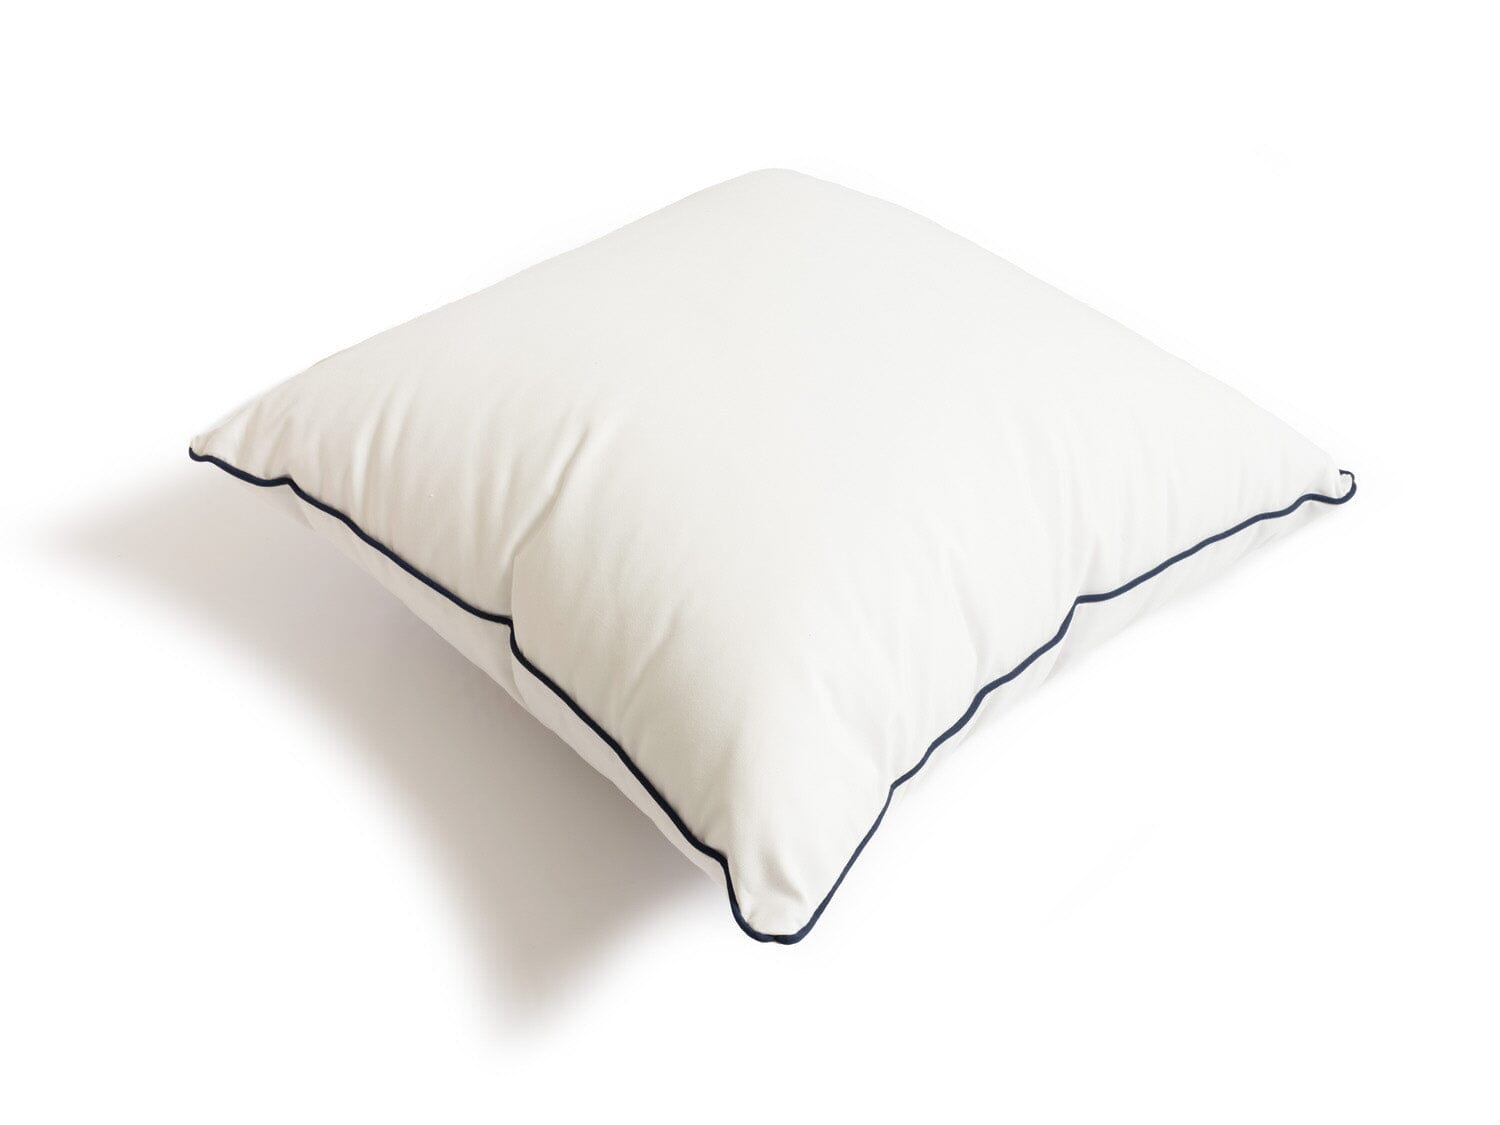 studio image of small white throw pillow